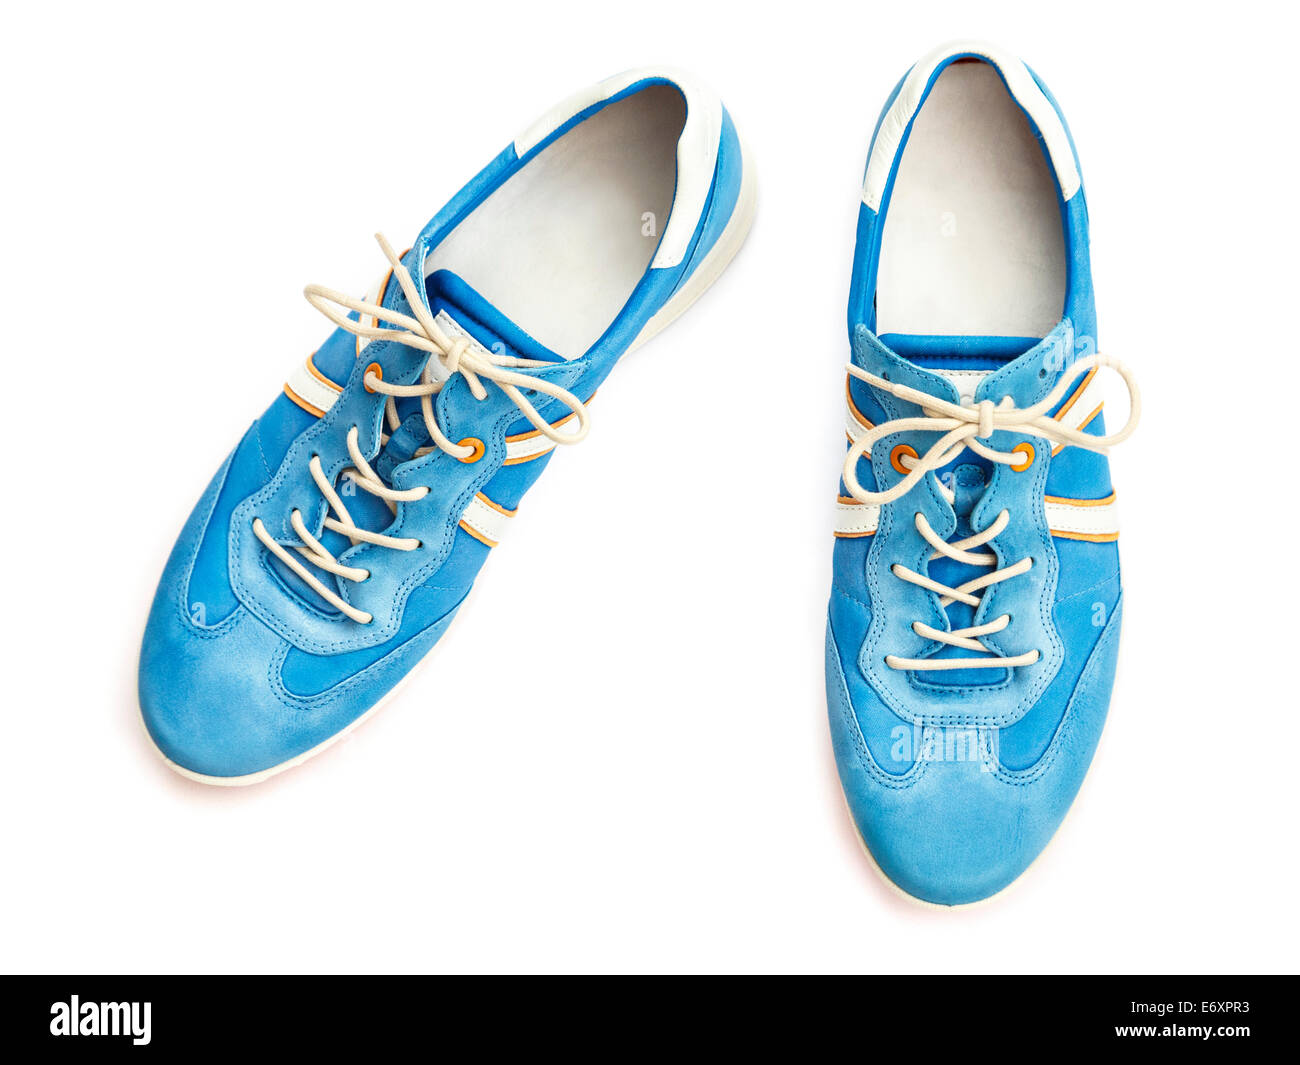 Ein paar neue blaue Damen Schnürschuhe Trainer style casual Schuhe sneakers  Cut-out und auf einem weißen Hintergrund von oben gesehen isoliert.  Großbritannien Stockfotografie - Alamy